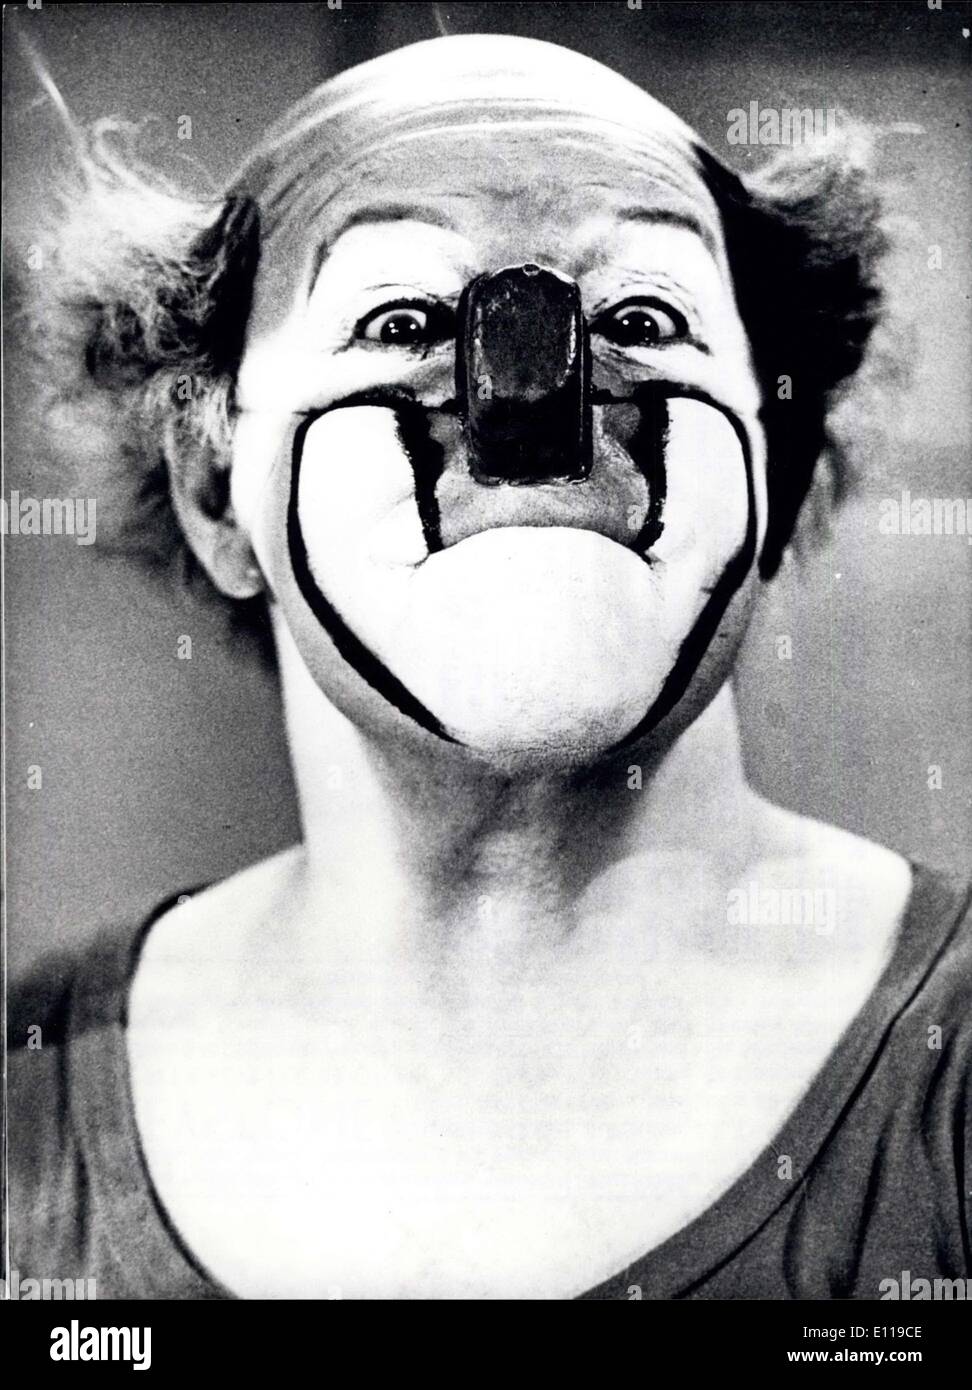 23. April 1976 - Clown Charlie Rivel wird 80 Jahre alt geworden: am 23. April 1976, Charles Andreu, besser bekannt als Charlie Rivel, feiert seinen 80. Geburtstag. Charlie Rivel, eines der berühmtesten Clown der Welt, wurde bereits im Zirkus erscheinen, als er neun Jahre alt war; 1924 kam er nach Deutschland zum ersten Mal. Am Anfang hatte er Erfolg mit seiner Nachahmung von Charles Chaplin, aber dann entwickelte er seinen eigenen Stil. 1931 präsentierte er seine berühmteste Nummer '' Akrobat Schoooon!'', an der Scala in Berlin Stockfoto